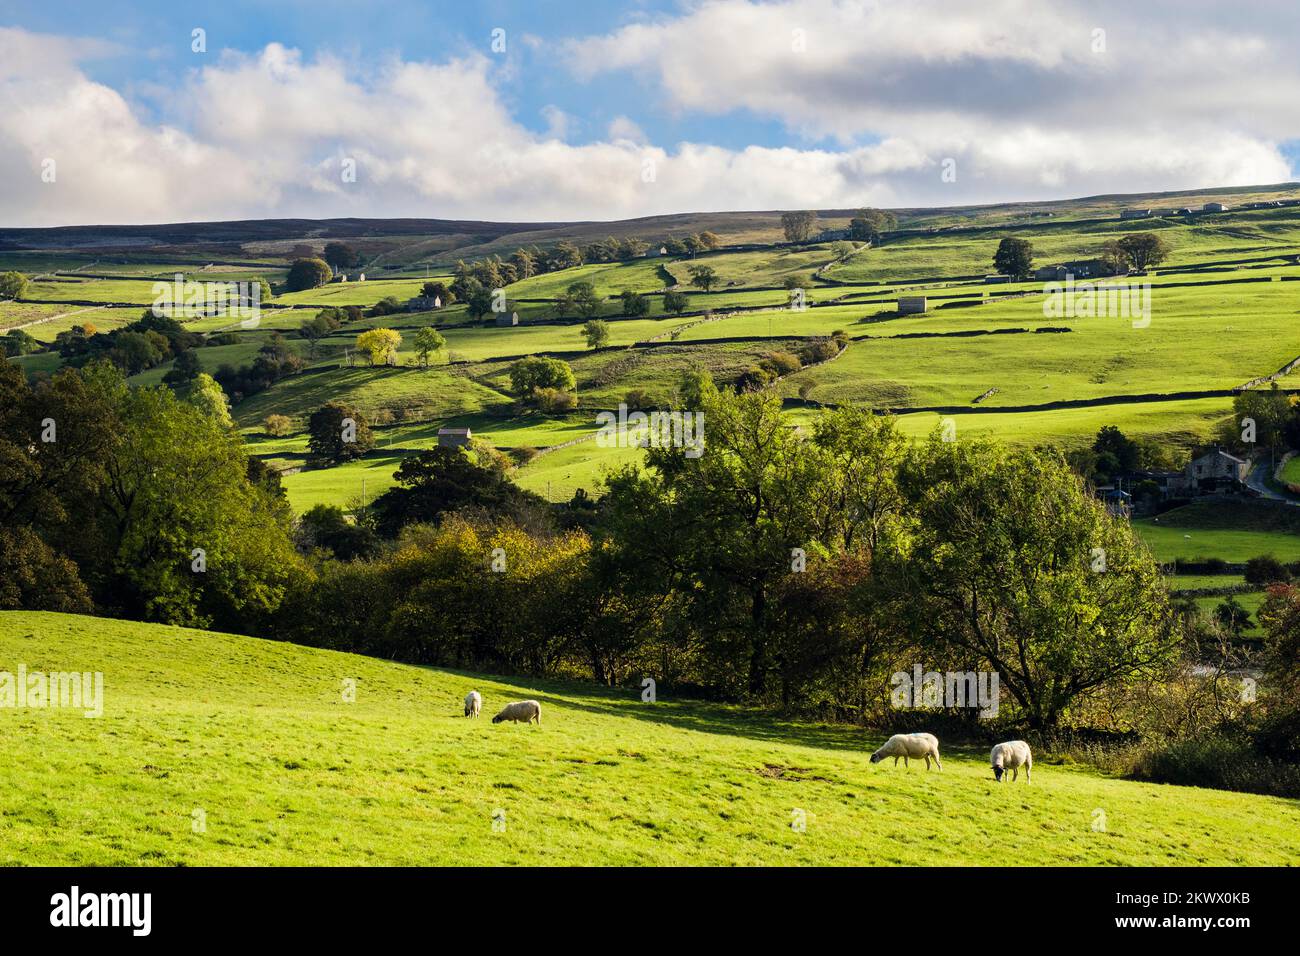 Campagne anglaise avec pâturage des moutons à côté de la rivière Swale dans le parc national de Yorkshire Dales. Gunnerside, Swaledale, North Yorkshire, Angleterre, Royaume-Uni Banque D'Images